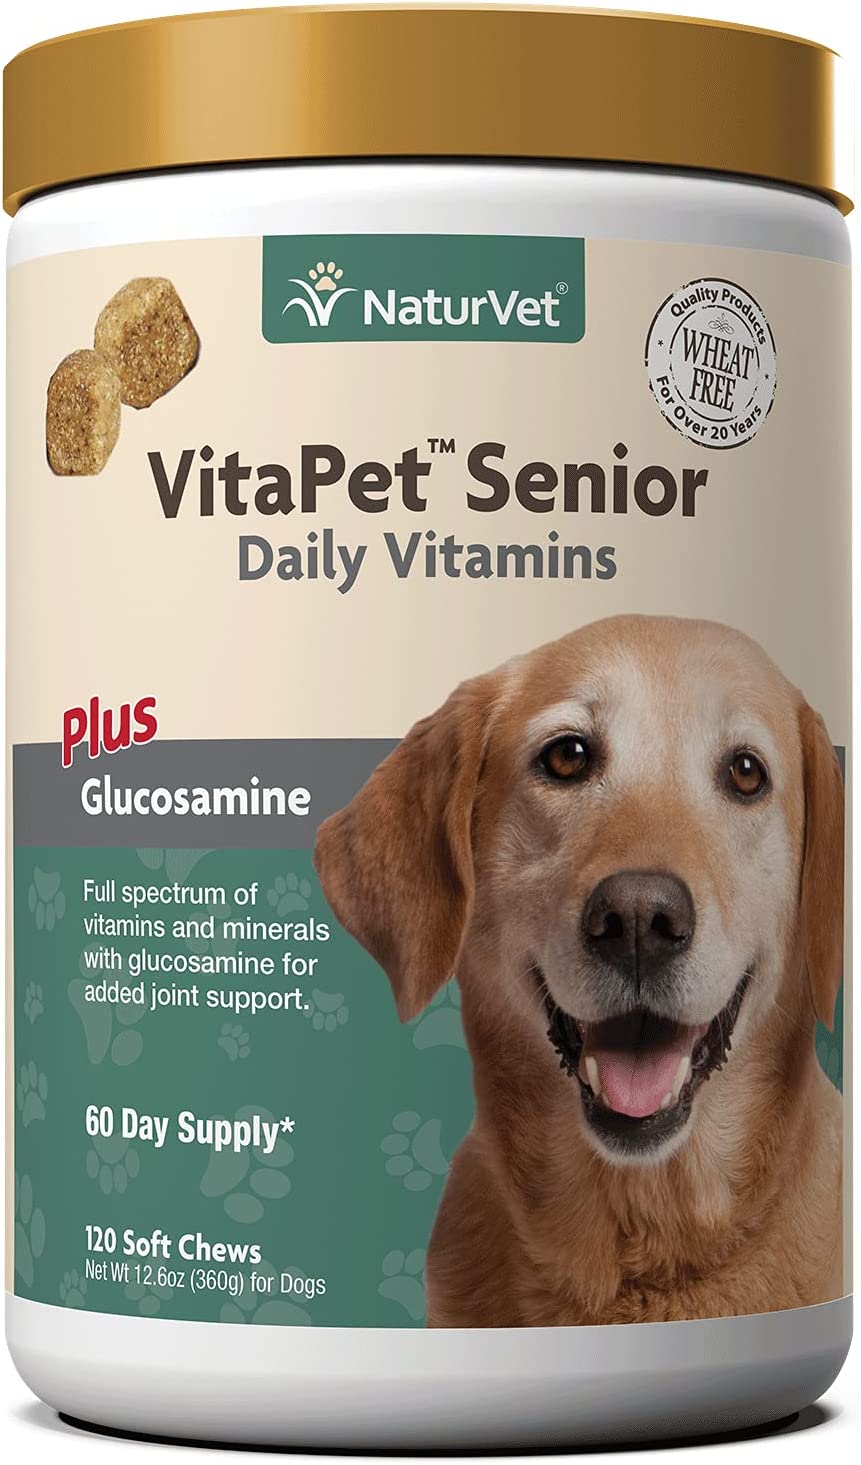 2. NaturVet VitaPet Senior Daily Vitamin Dog Supplements